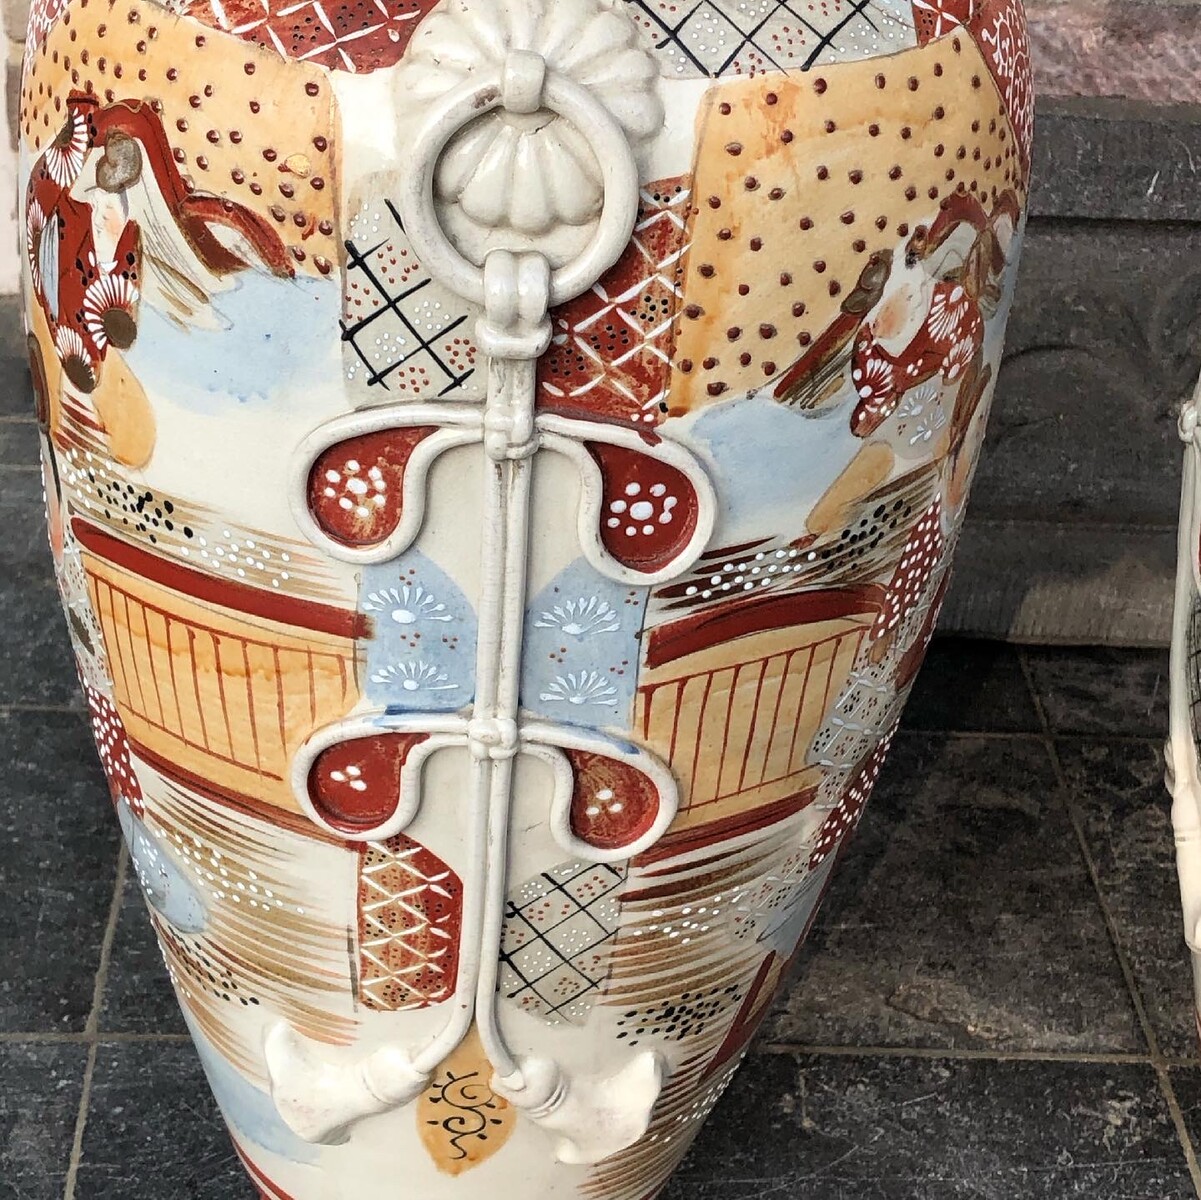 Asiatique Pair Japanese Satsuma vases